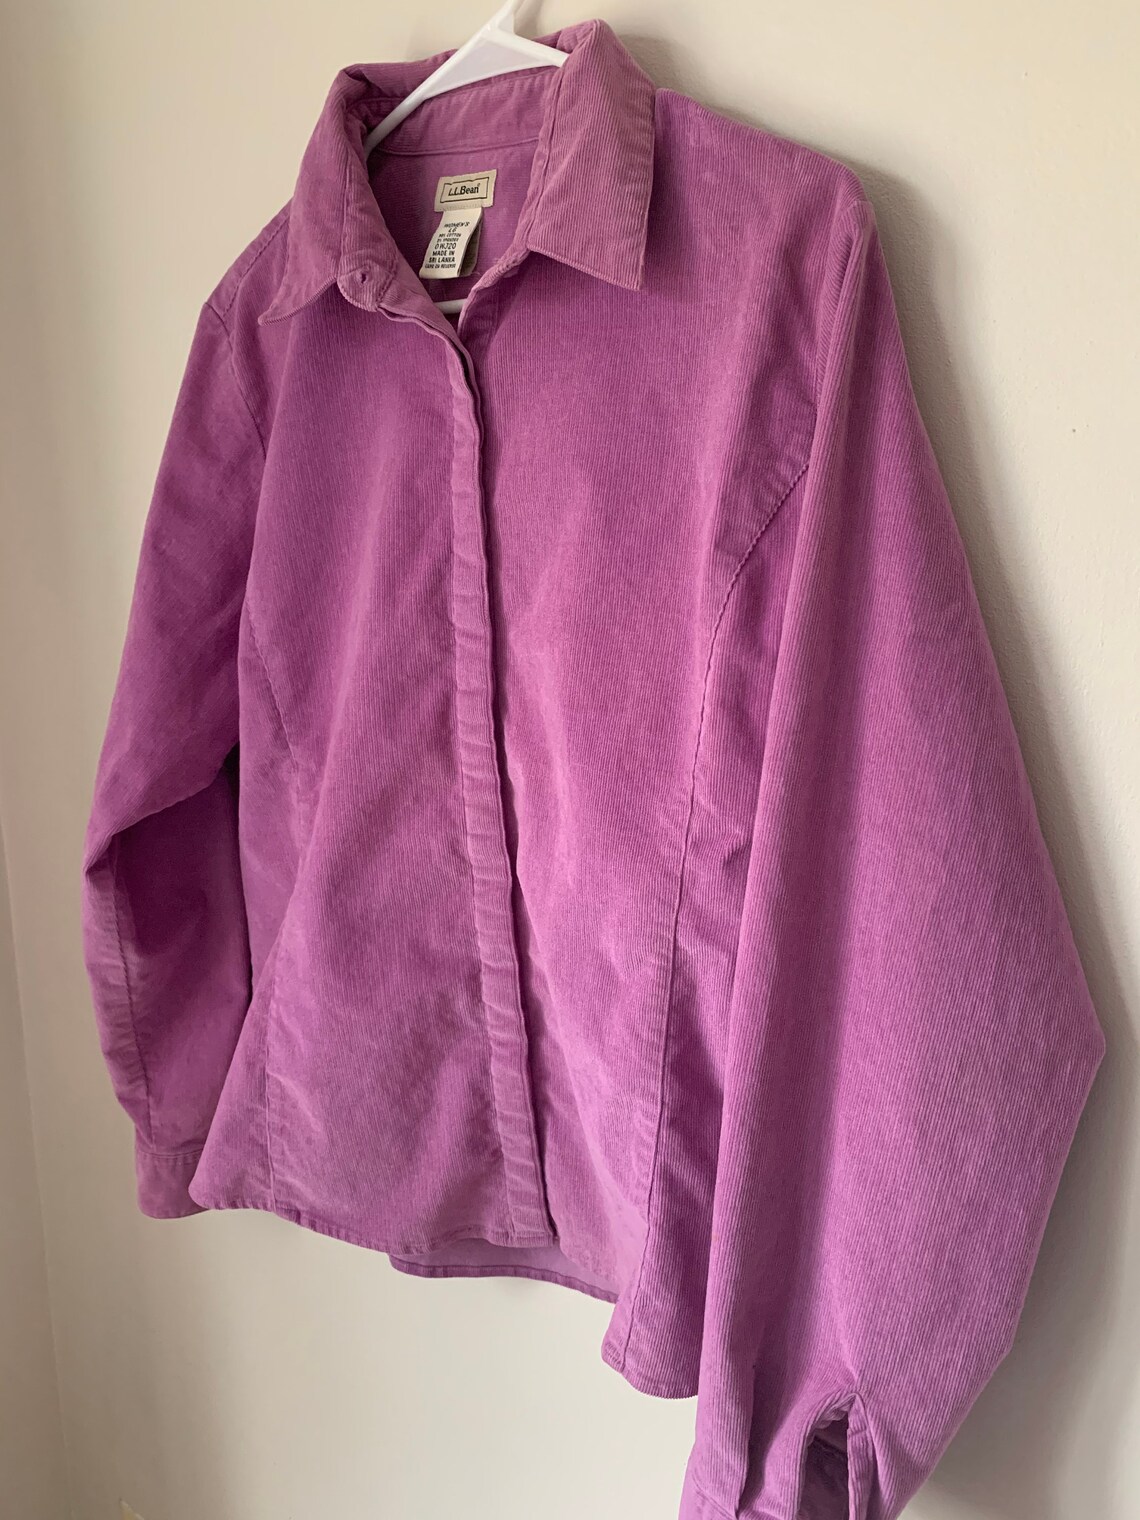 Vintage 90s LL Bean Corduroy Shirt Jacket size L | Etsy